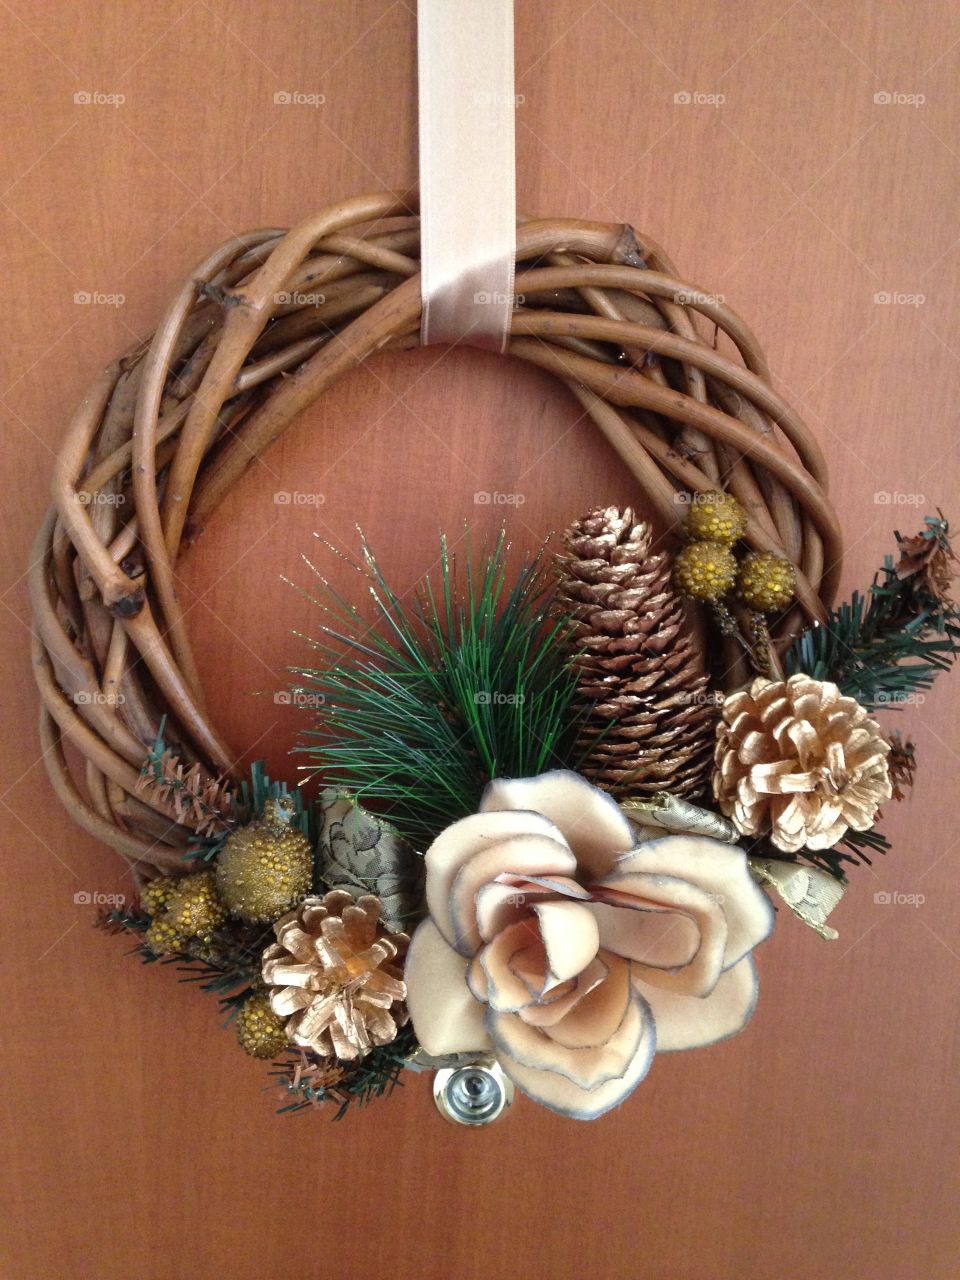 Flower wreath on wooden background